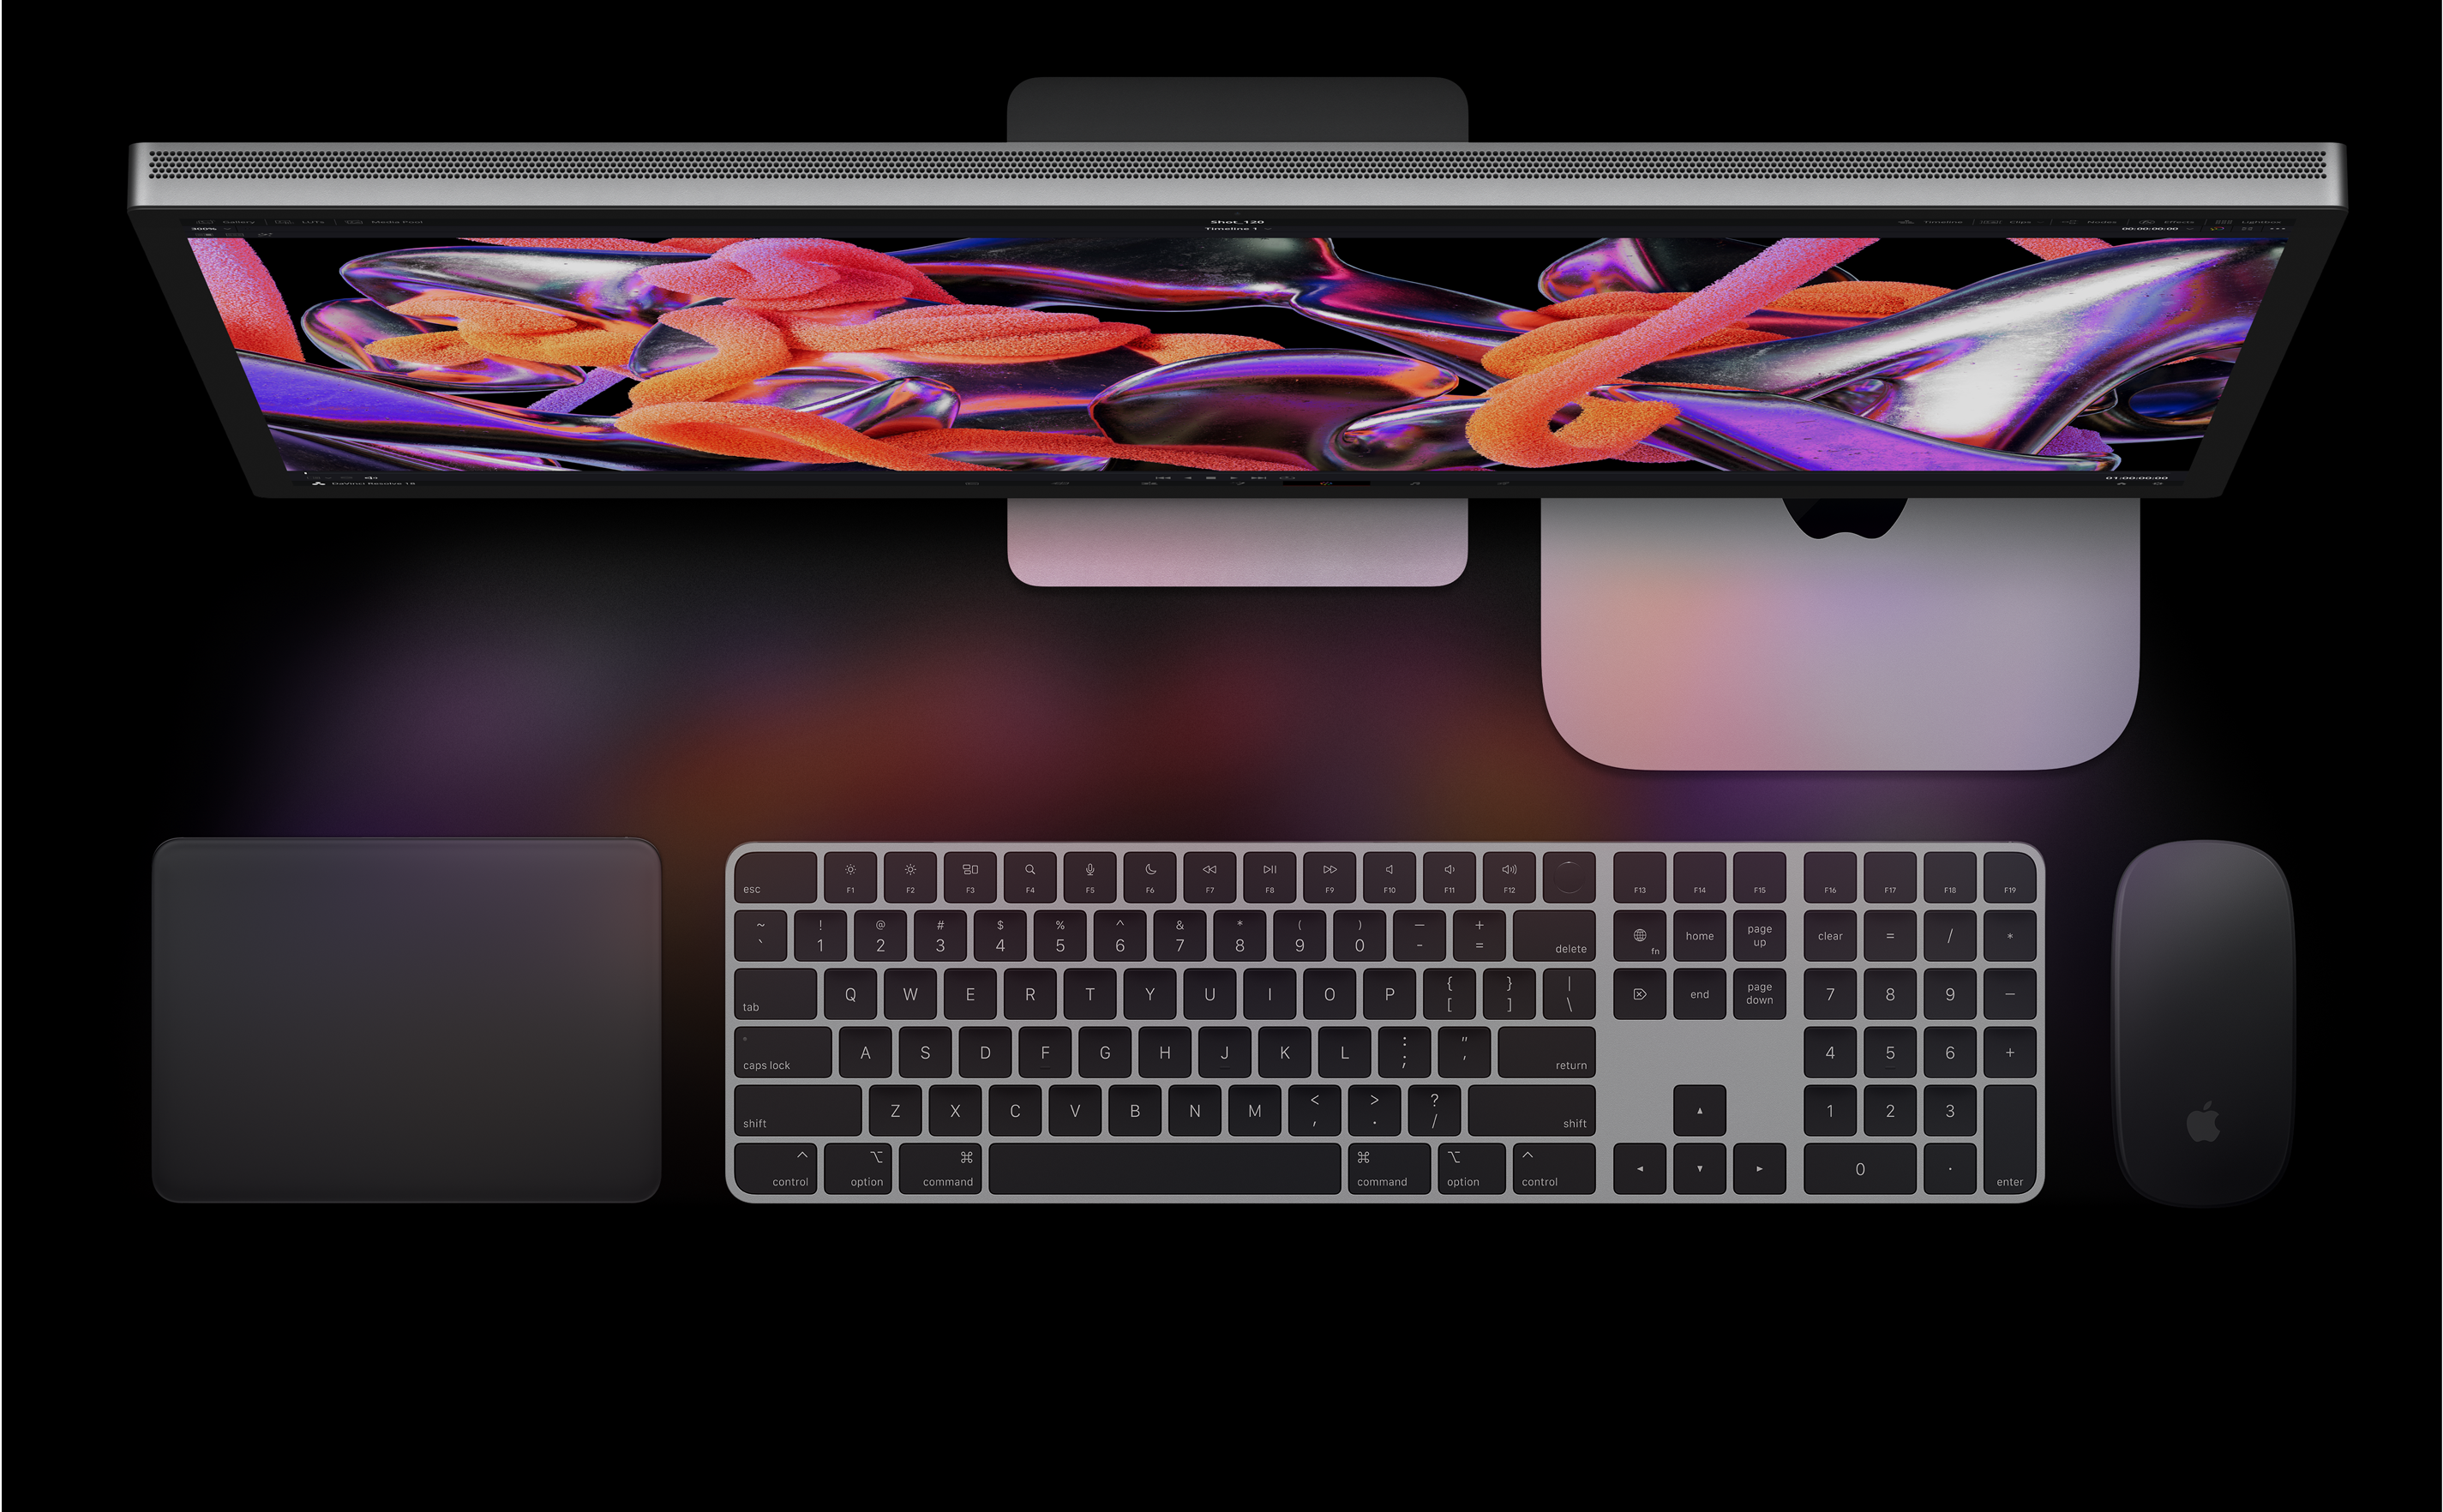 Blick von oben auf das Studio Display, den Mac mini, das Magic Trackpad, das Magic Keyboard und die Magic Mouse.